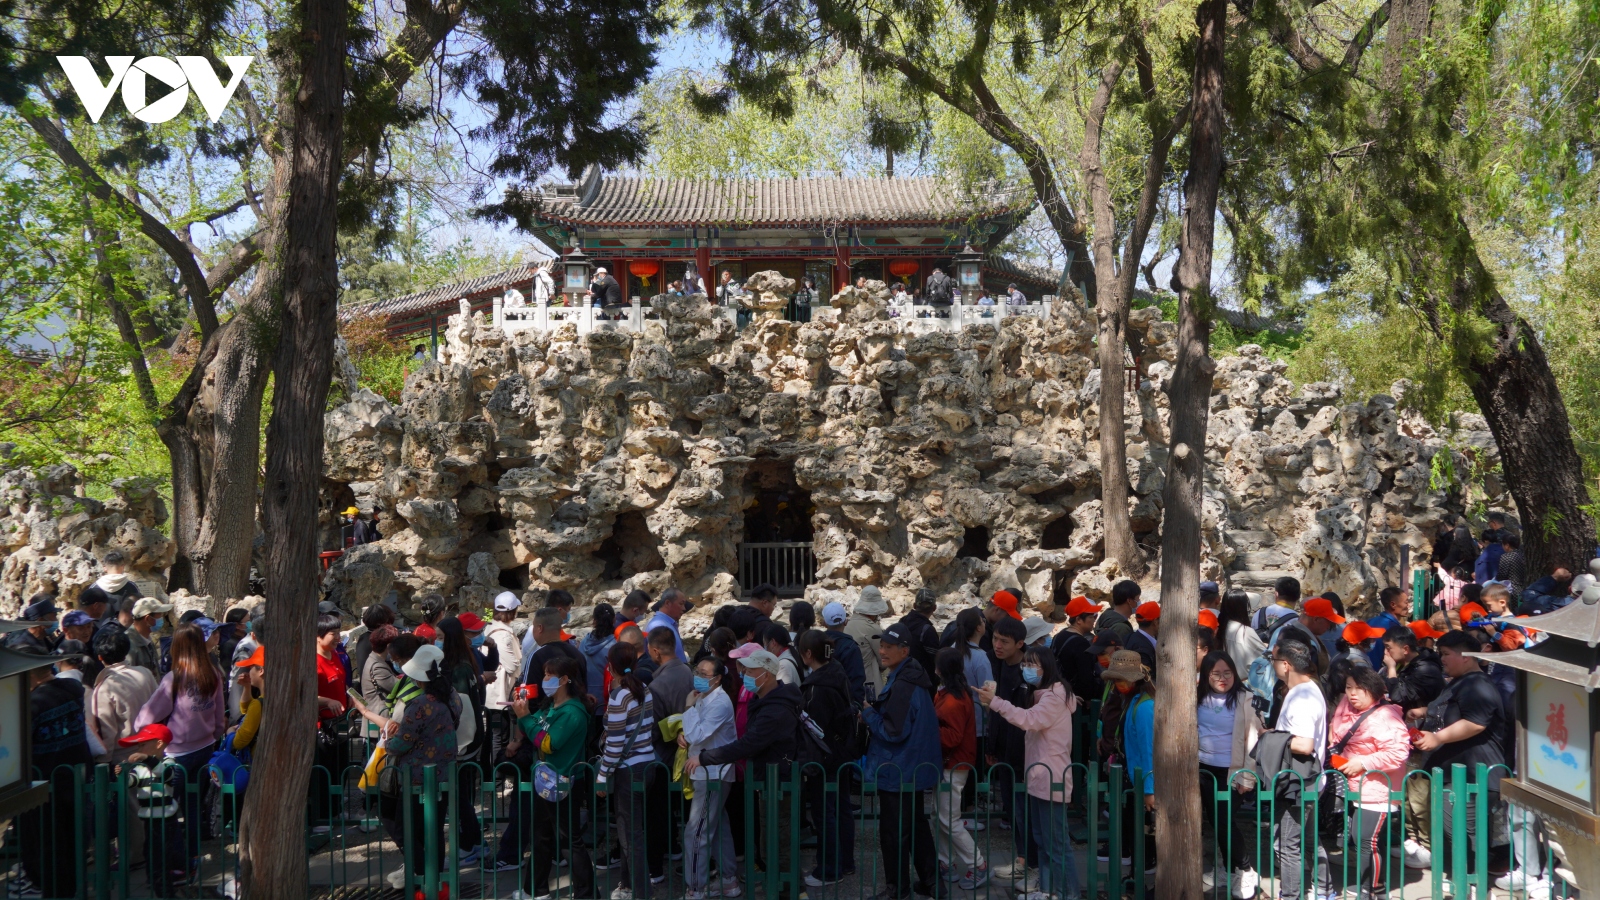 Bí ẩn trong Cung Vương Phủ - dinh thự đắc địa bậc nhất ở Bắc Kinh